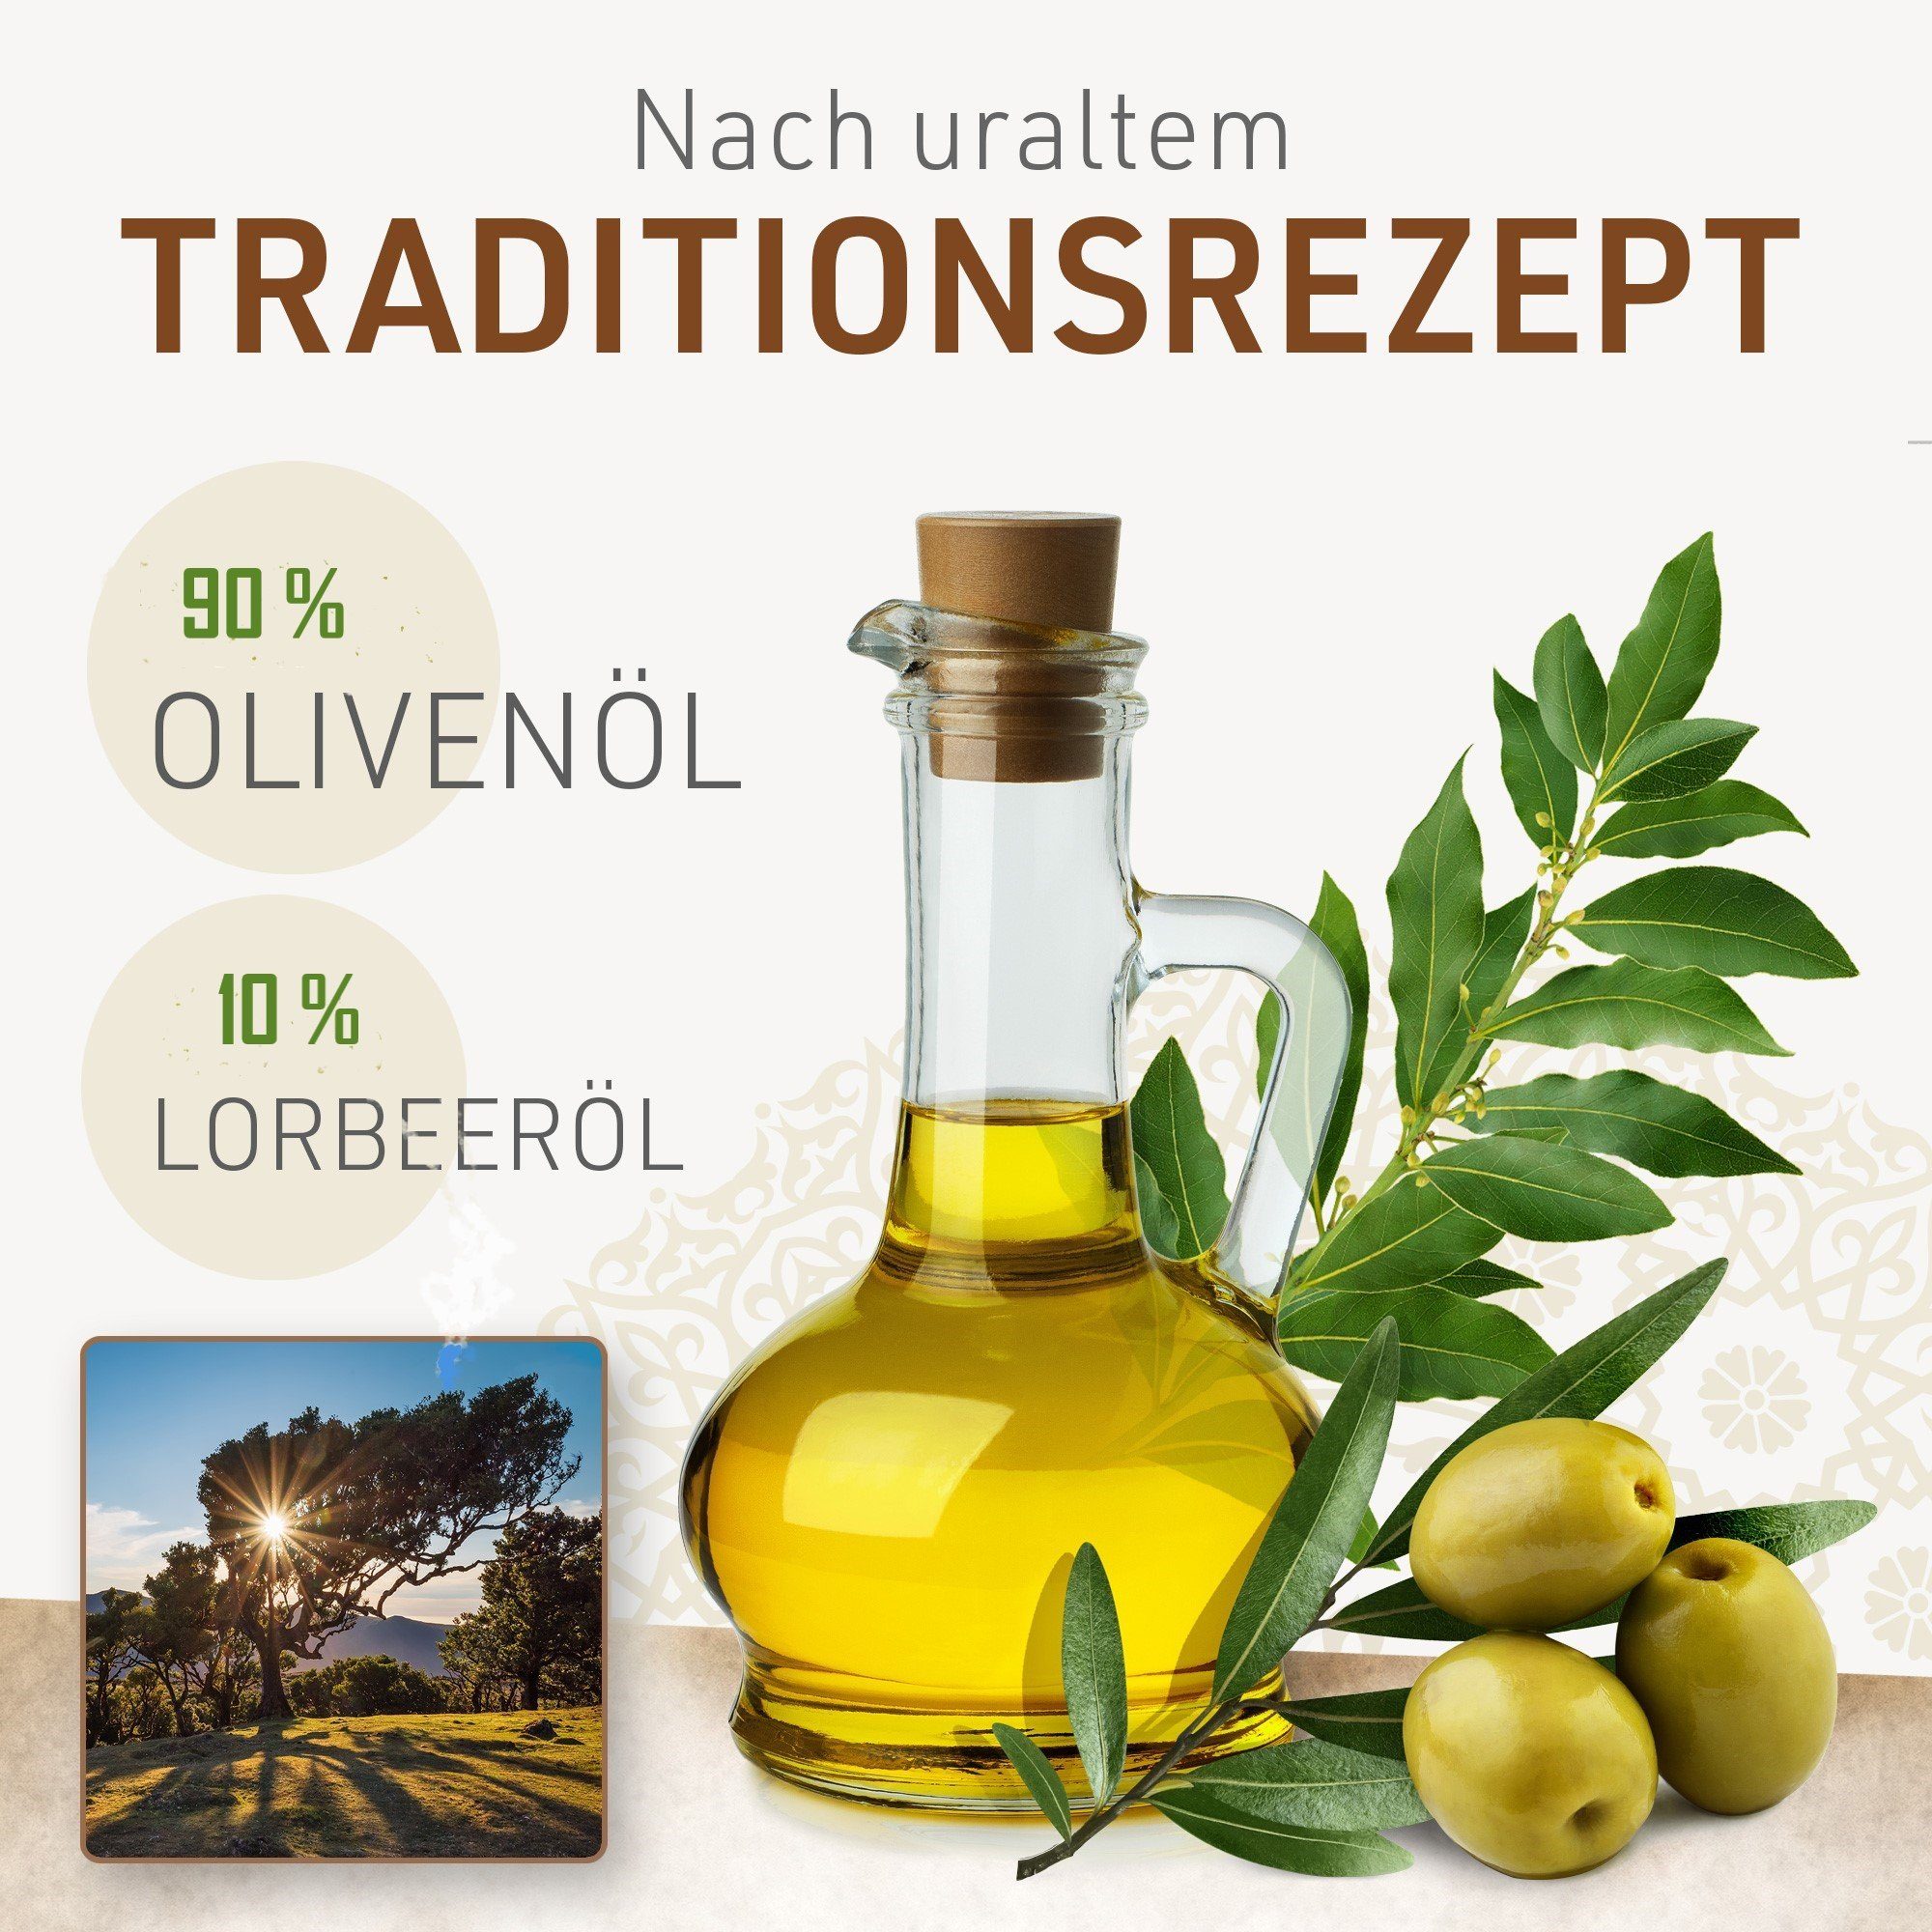 200 X Olivenöl, Duschseife Jumana Lorbeeröl Jumana originale - Feste Alepposeife, 1 90% g 10%